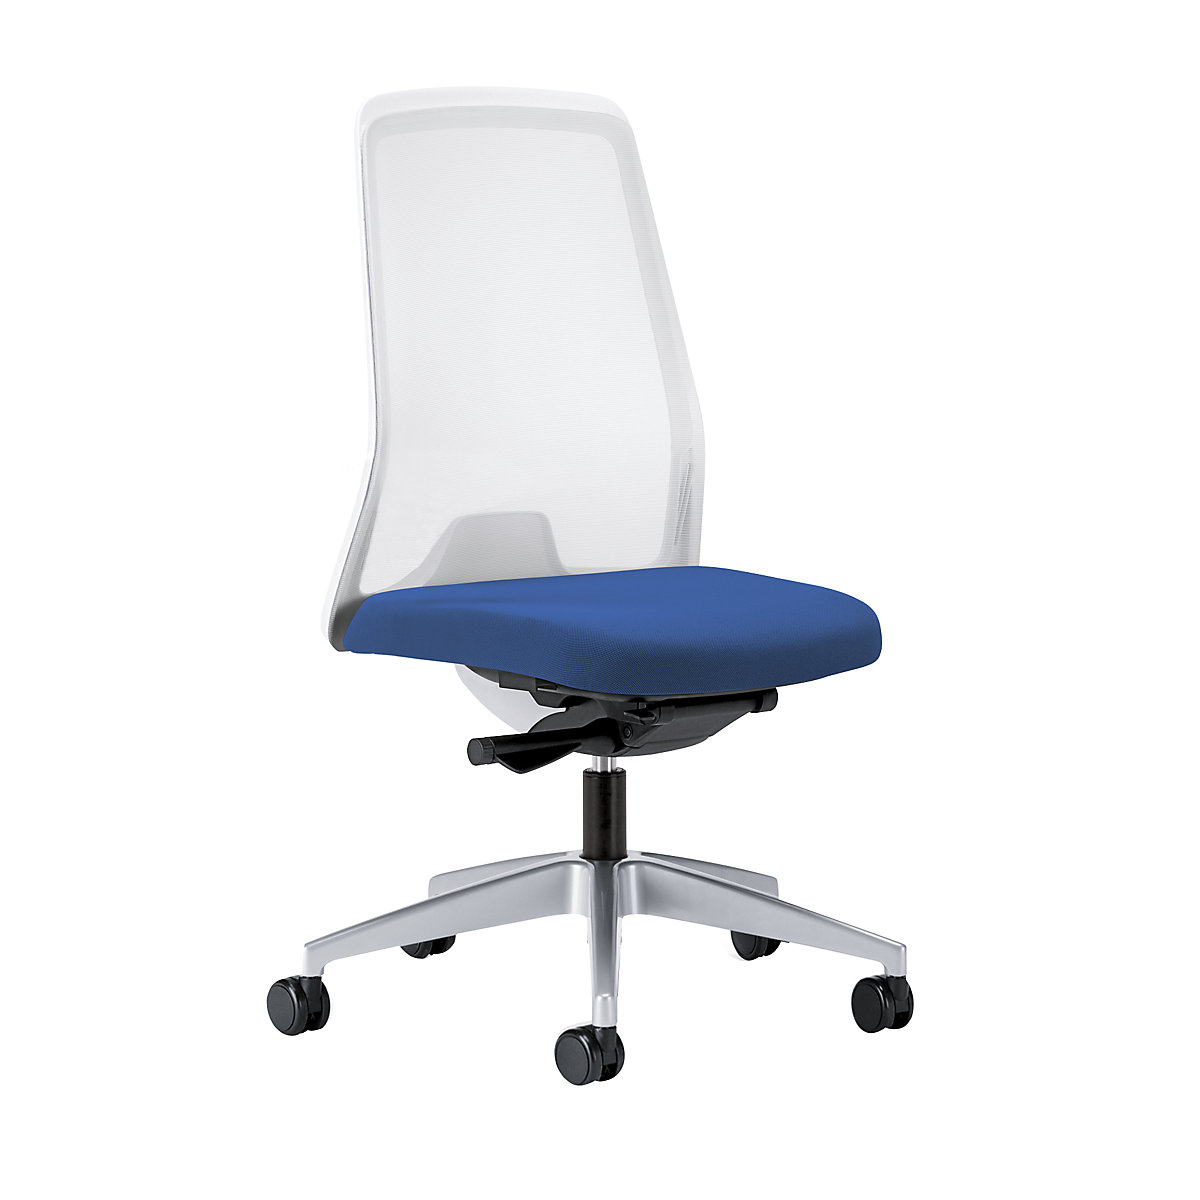 Krzesło obrotowe dla operatora EVERY, oparcie siatkowe, białe – interstuhl, szkielet brylantowo-srebrny, z miękkimi rolkami, niebieski gencjanowy, głęb. siedziska 430 mm-5